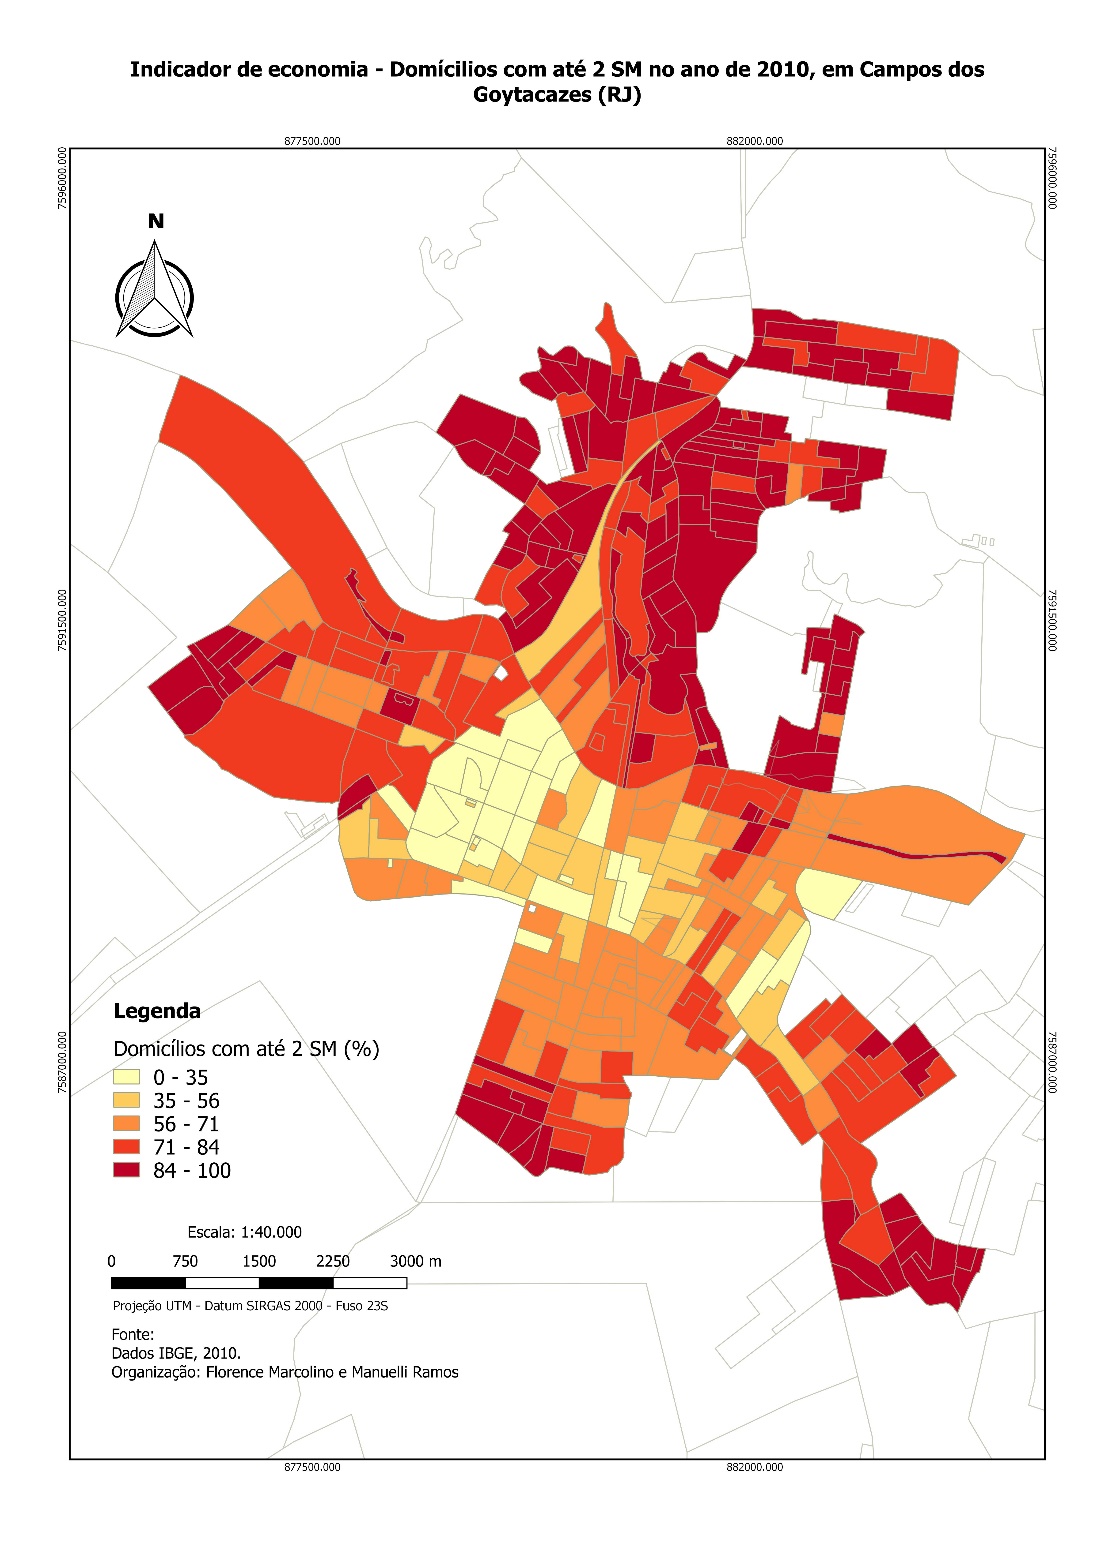 Distribuição espacial das famílias com renda familiar de até 2 salários mínimos, na cidade de Campos dos Goytacazes (RJ)